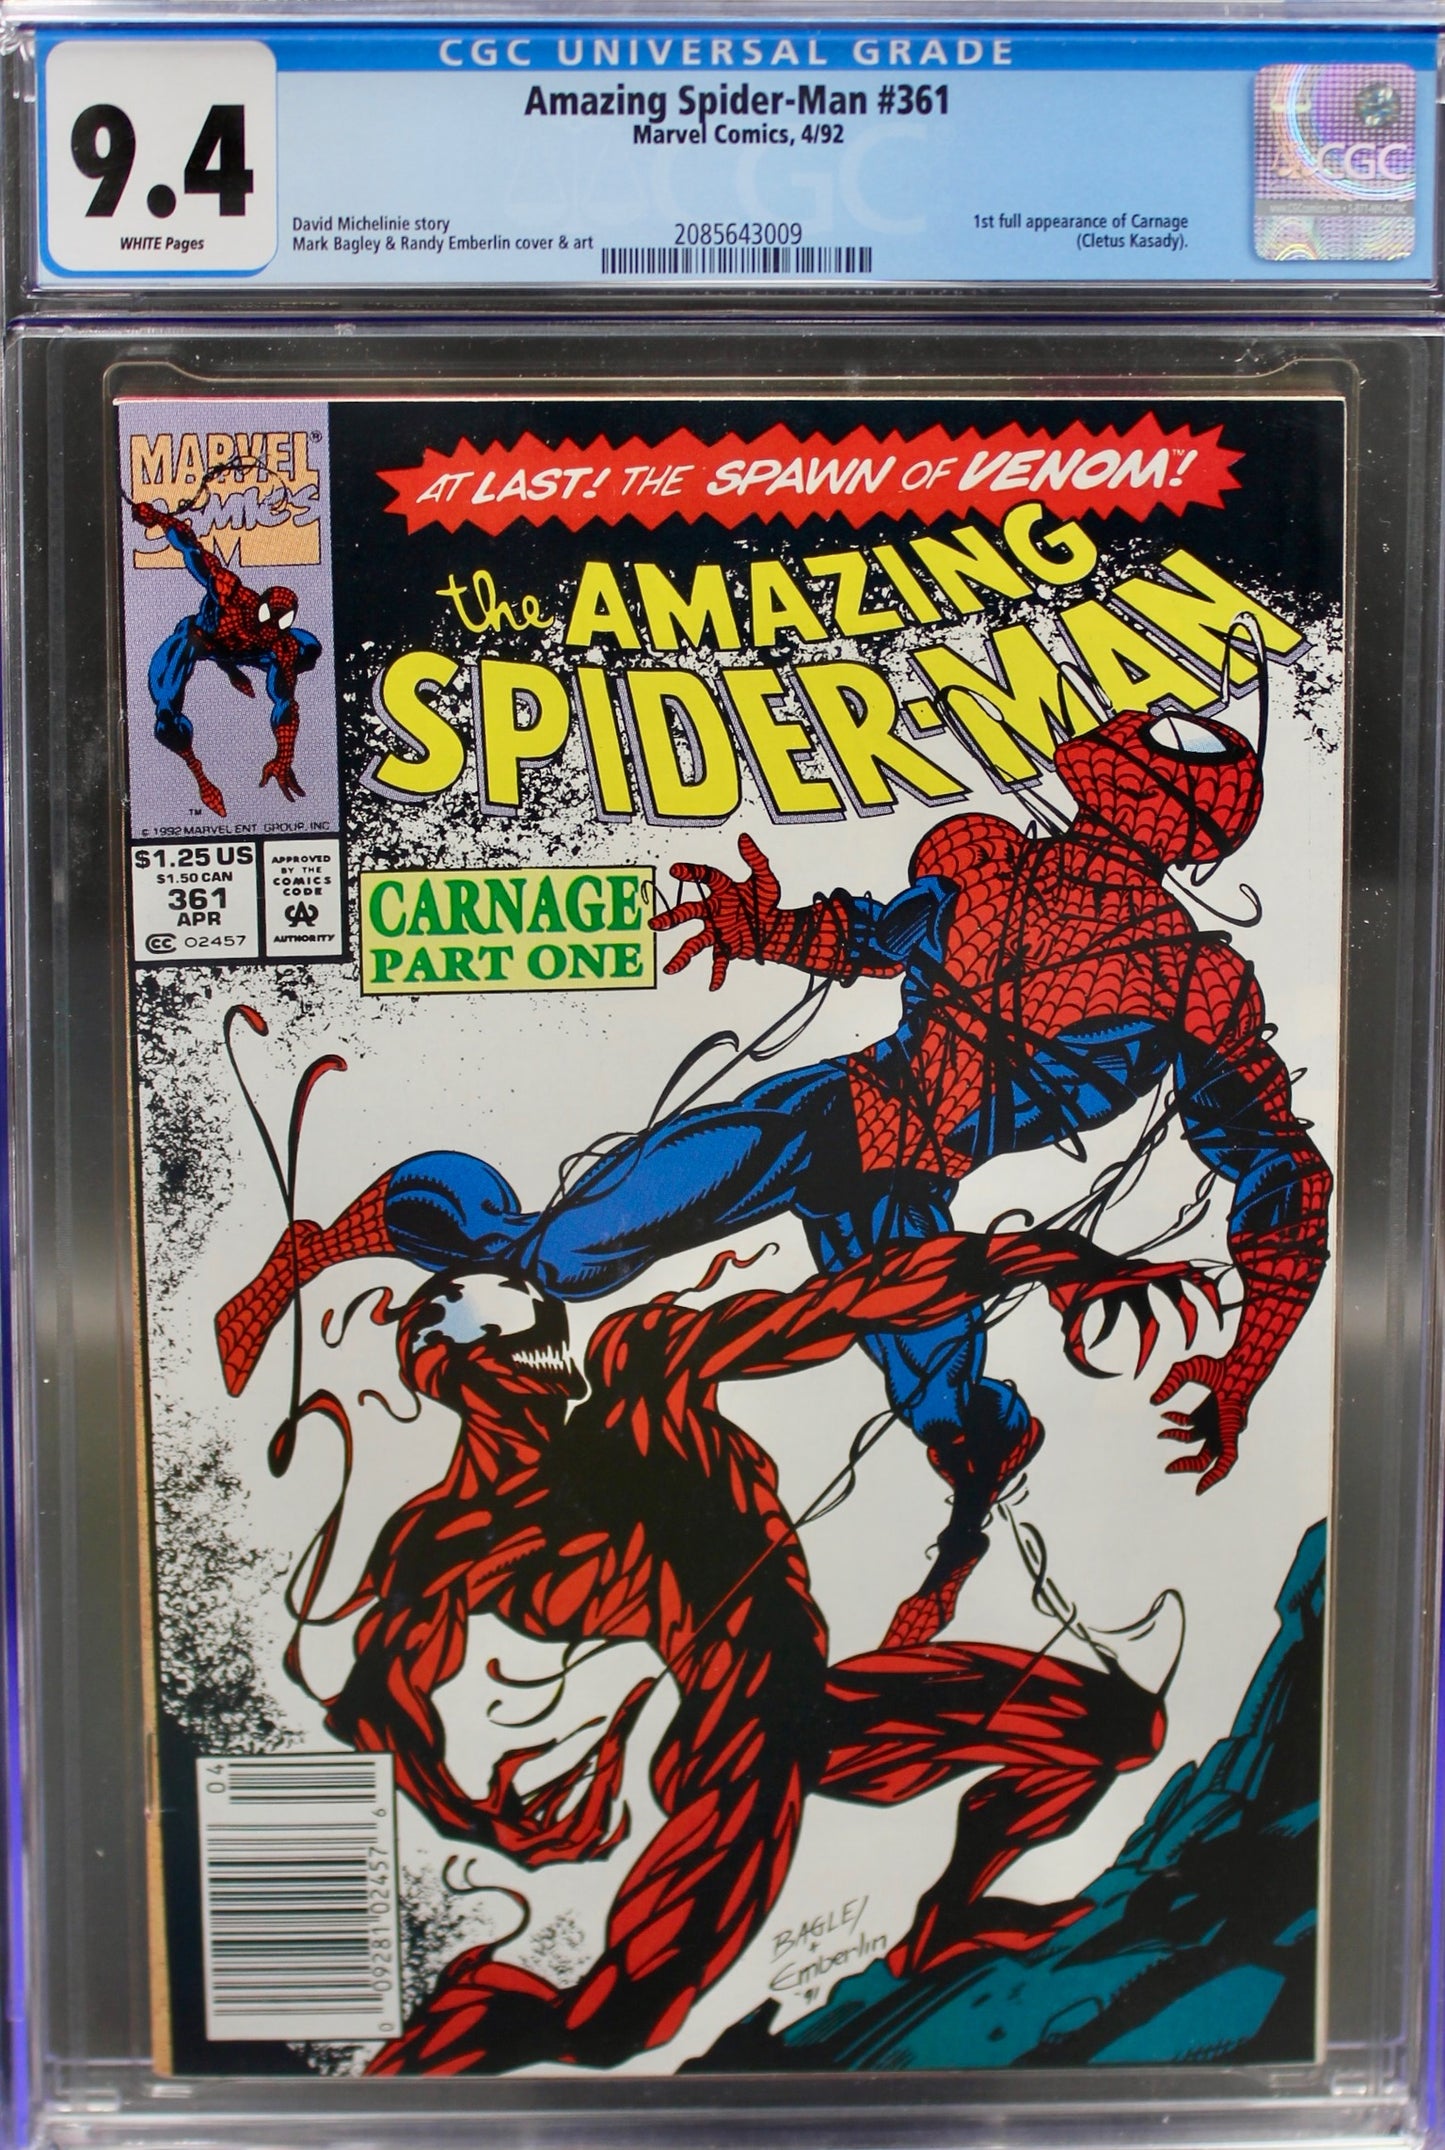 The Amazing Spiderman #361